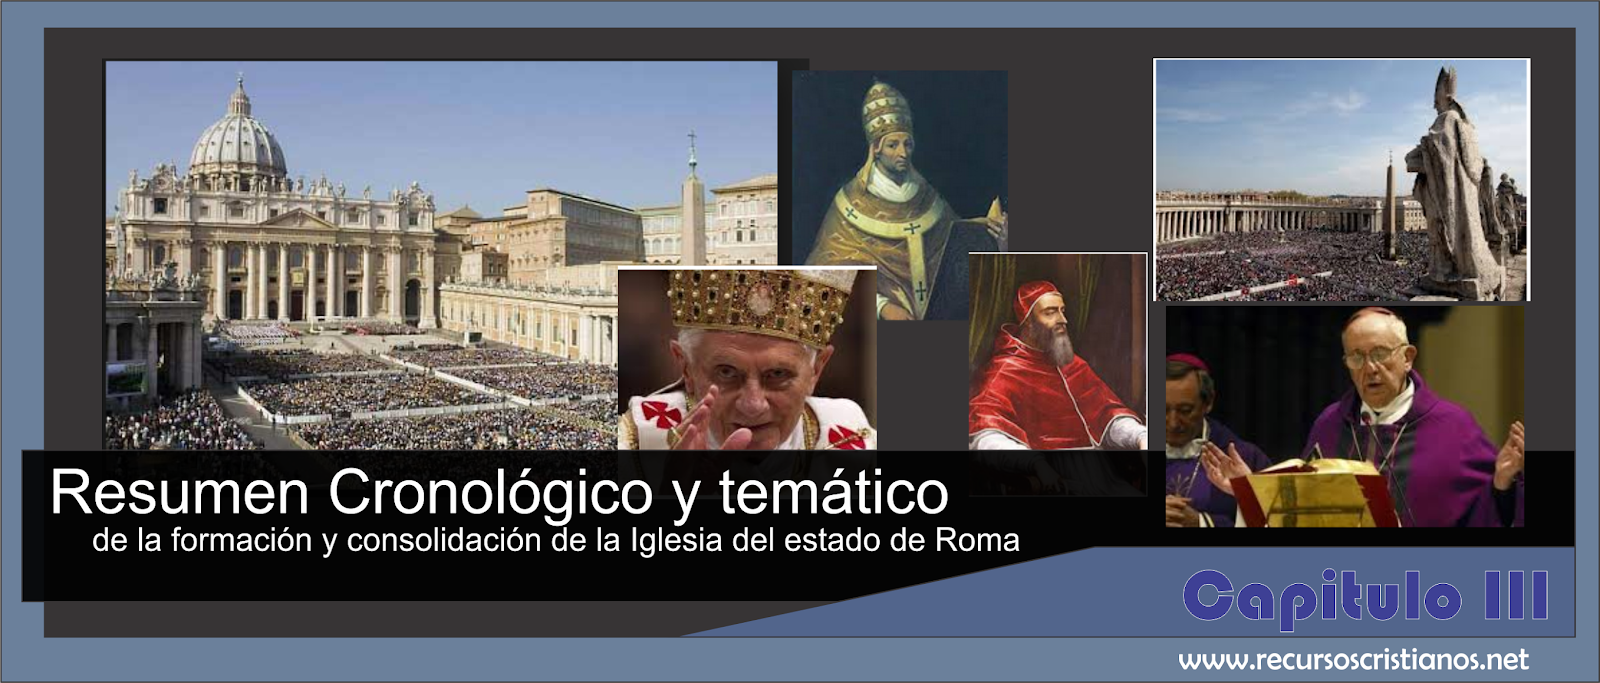 Resumen cronologico y Tematico de la Formacion y consolidacion de La Iglesia del estado de Roma, Capitulo III